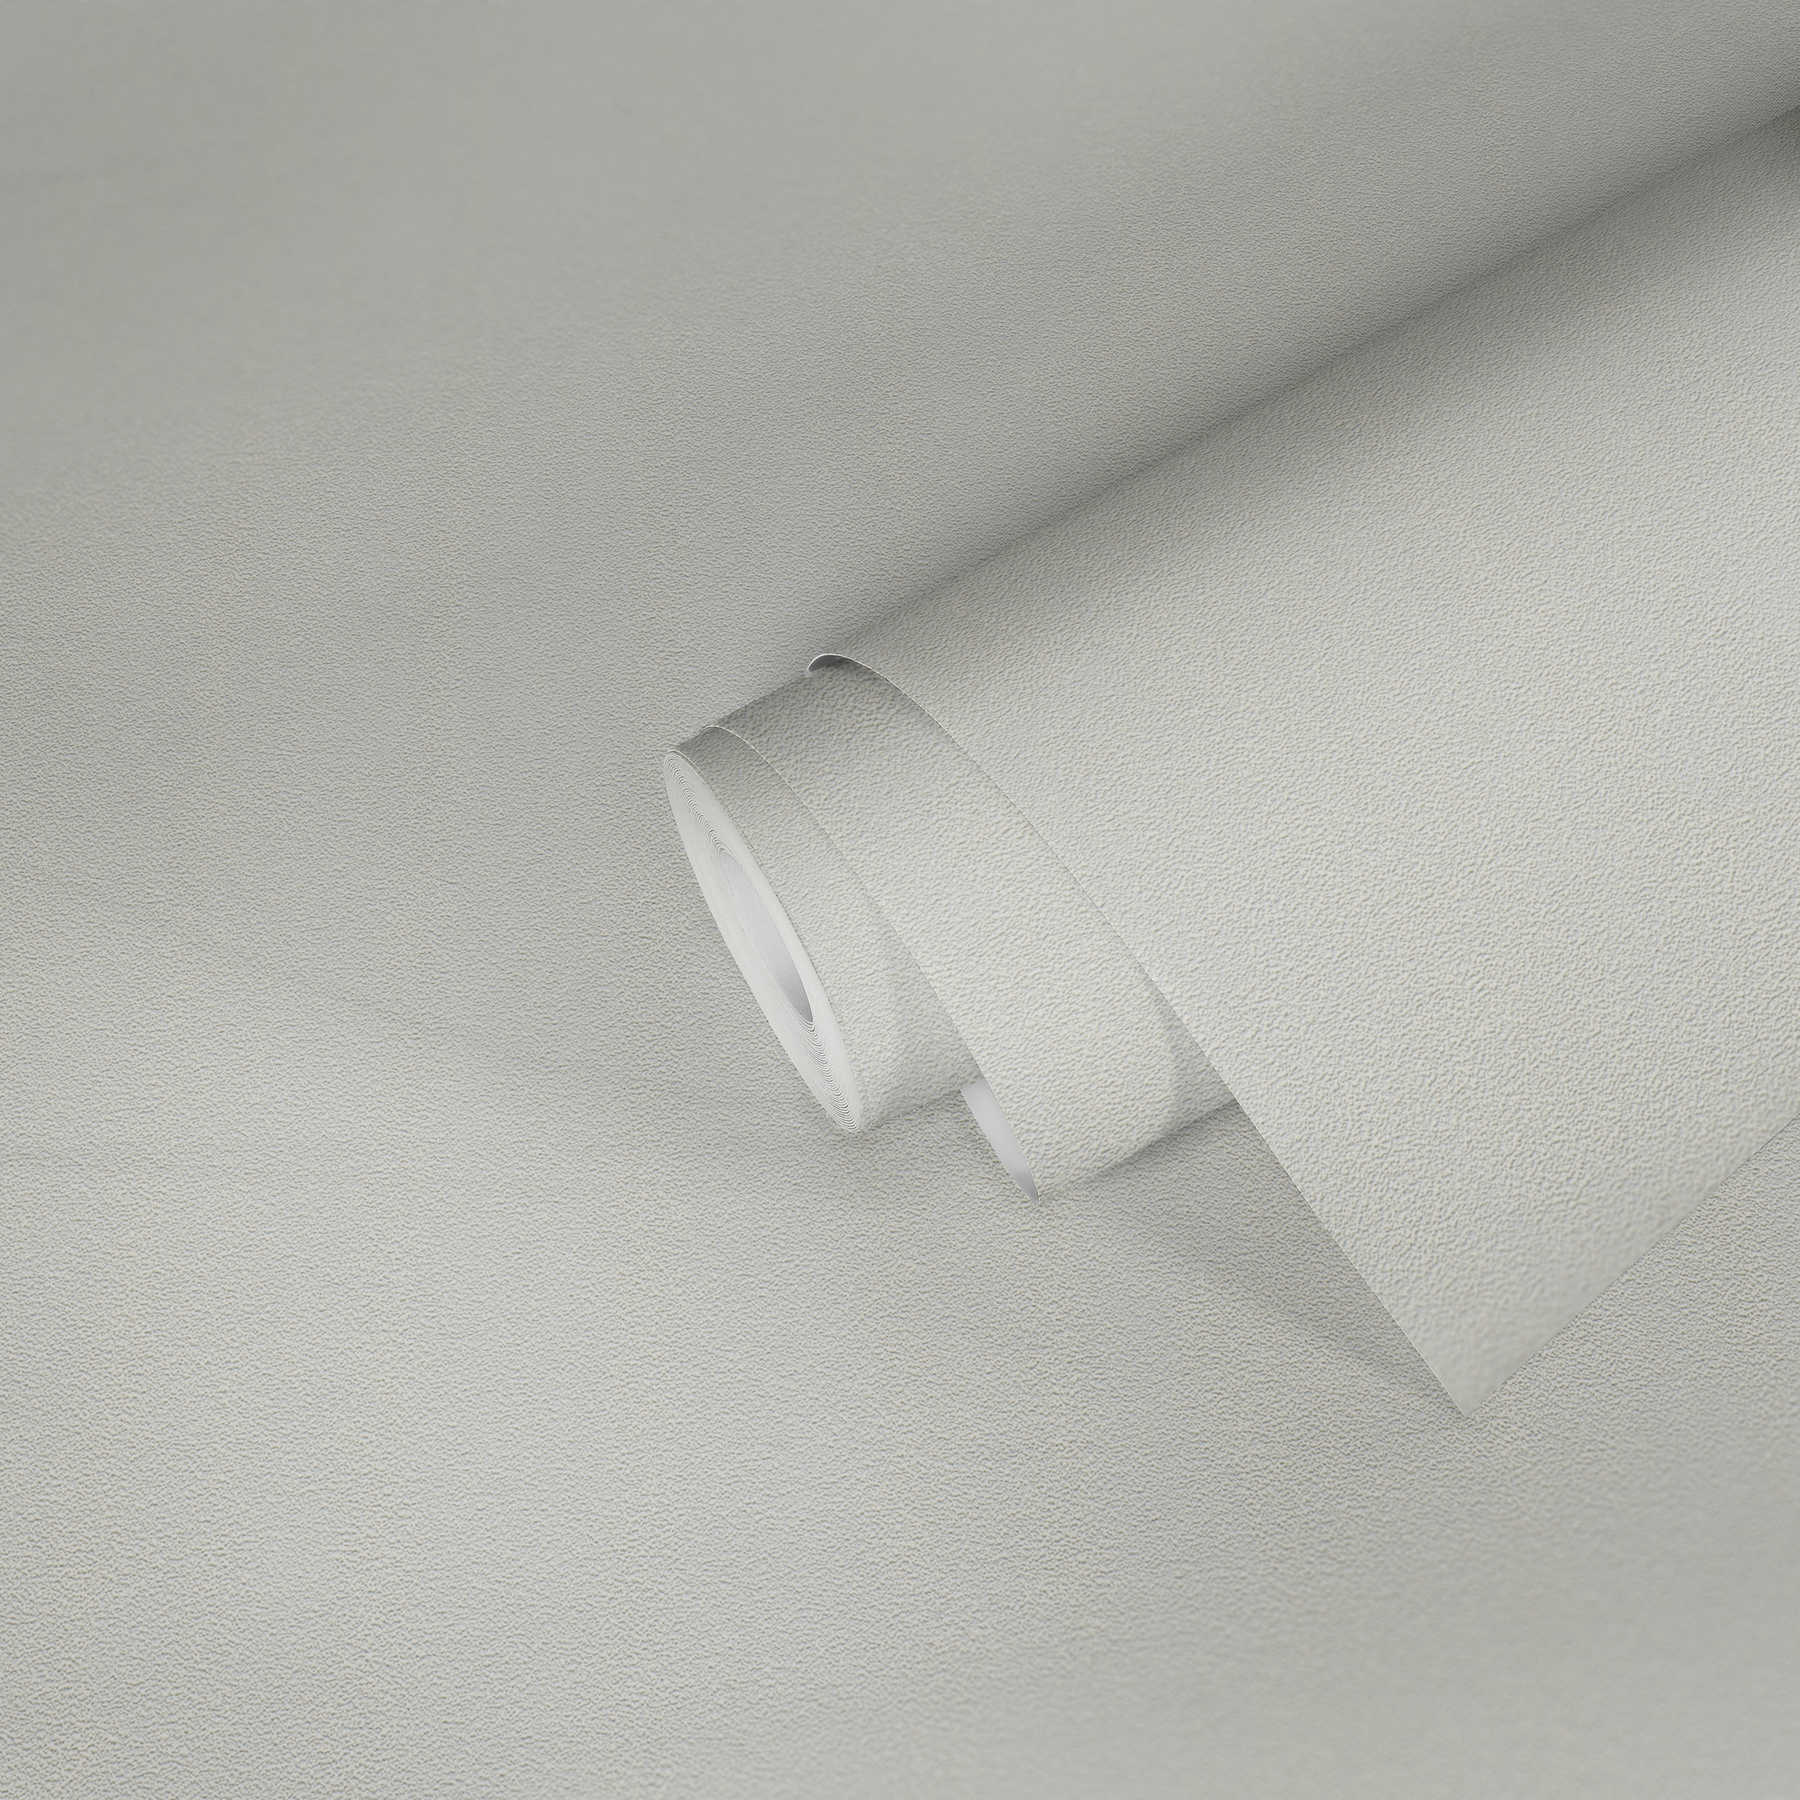             Papier peint à structure feutrée plate - blanc
        